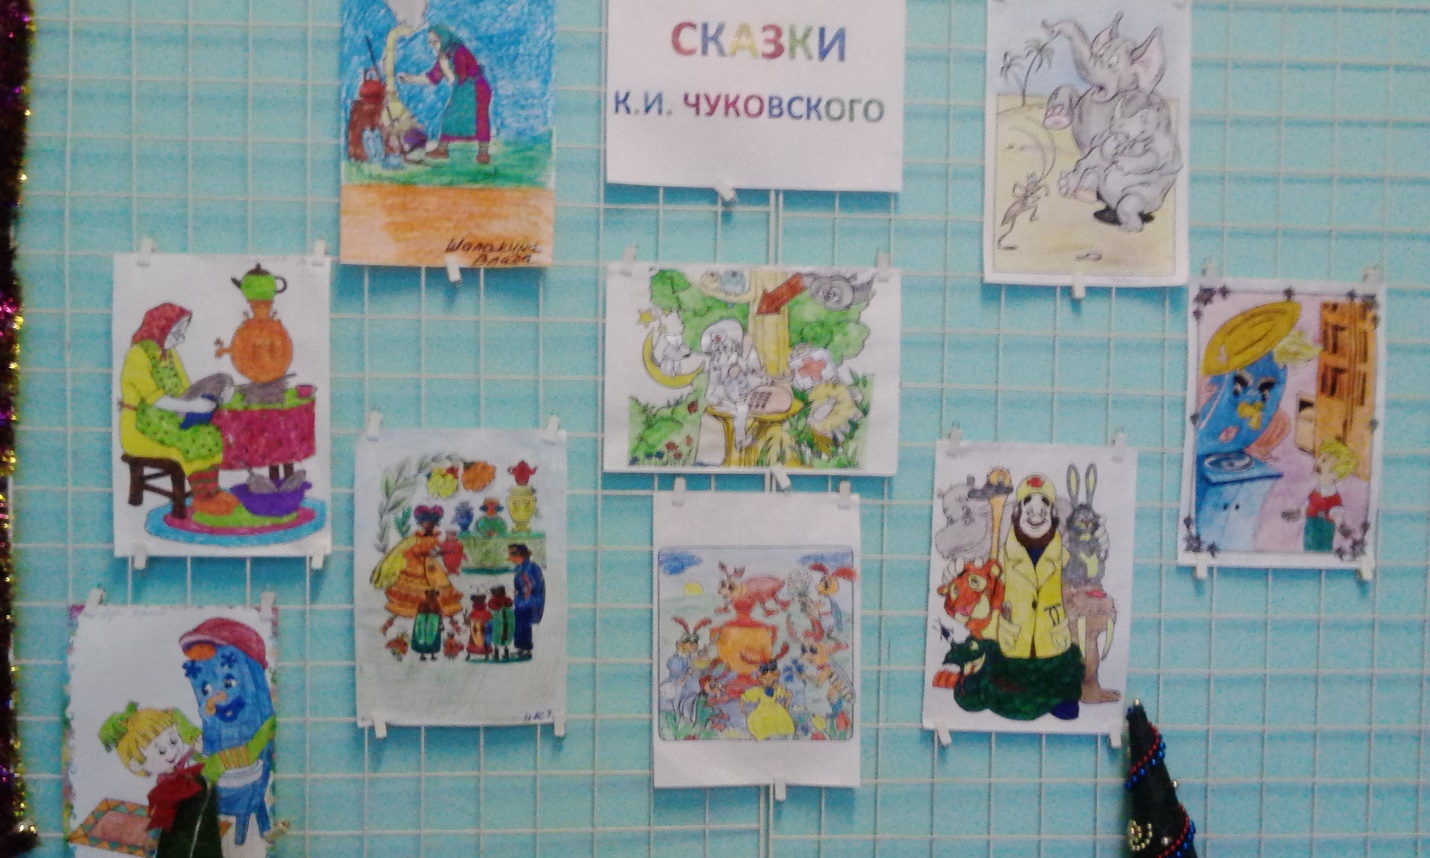 Выставка рисунков Сказки Чуковского